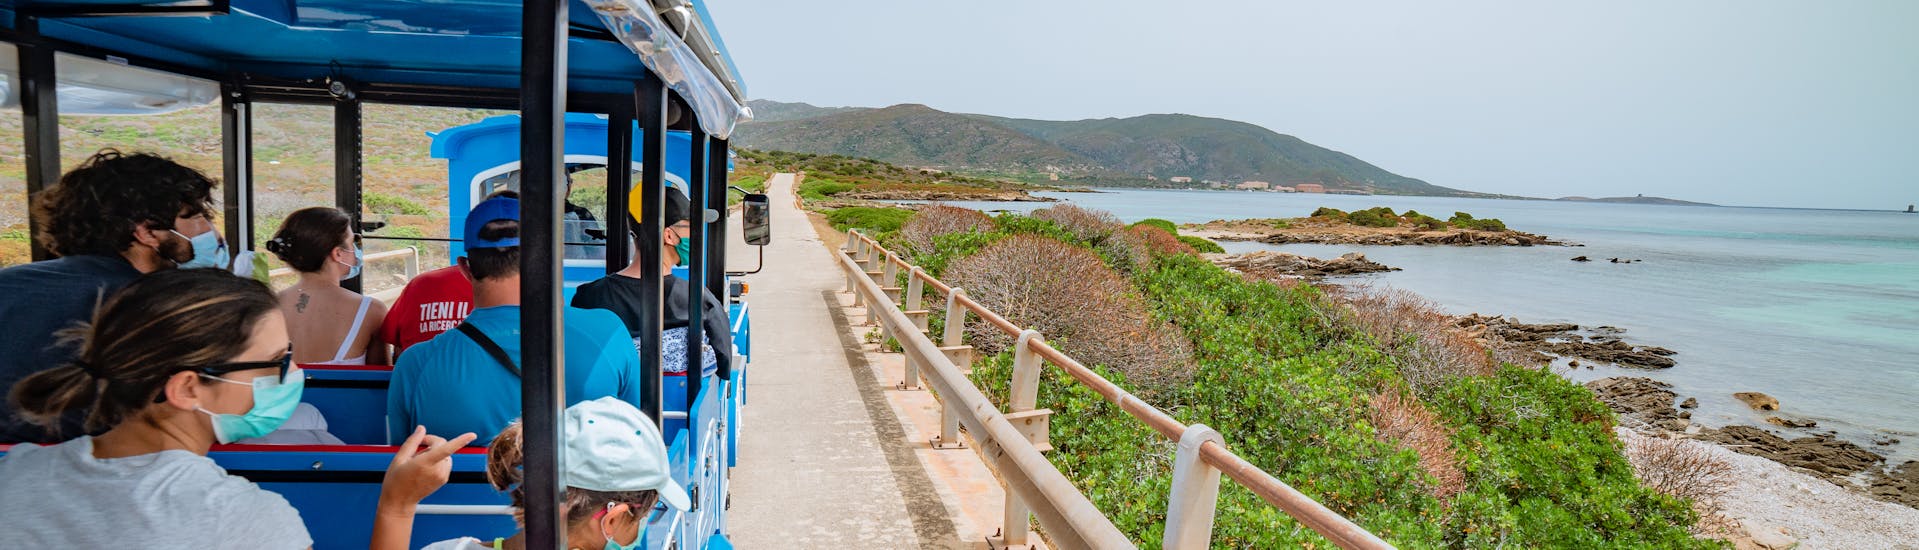 Mensen op het treintje kijken naar de kust van Asinara tijdens de kleine treinrit met Linea del Parco.